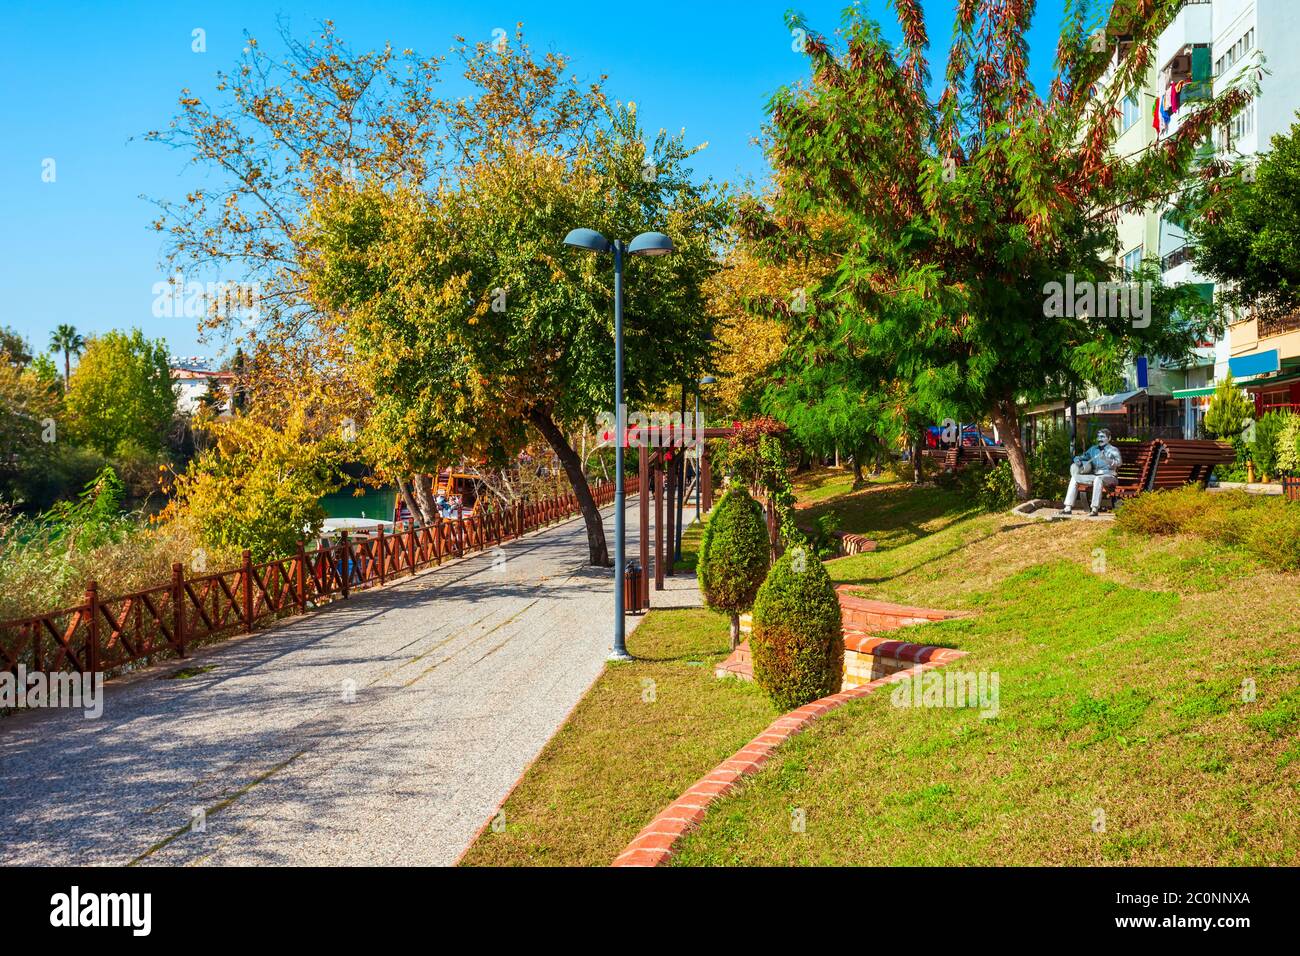 Passeggiata vicino al fiume Manavgat nel parco della città di Manavgat nella regione di Antalya in Turchia Foto Stock